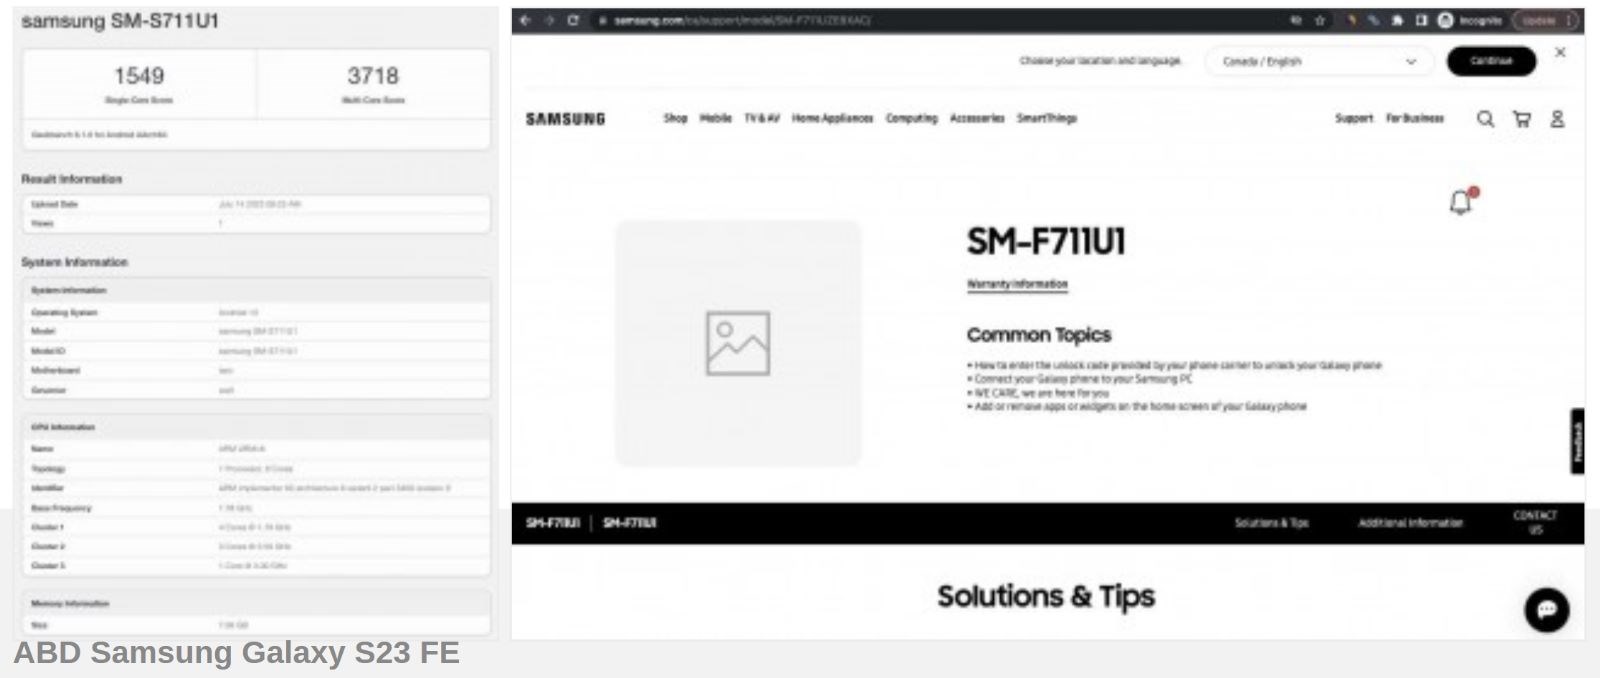 Samsung Galaxy S23 FE, iki farklı işlemci ile piyasaya sürülecek